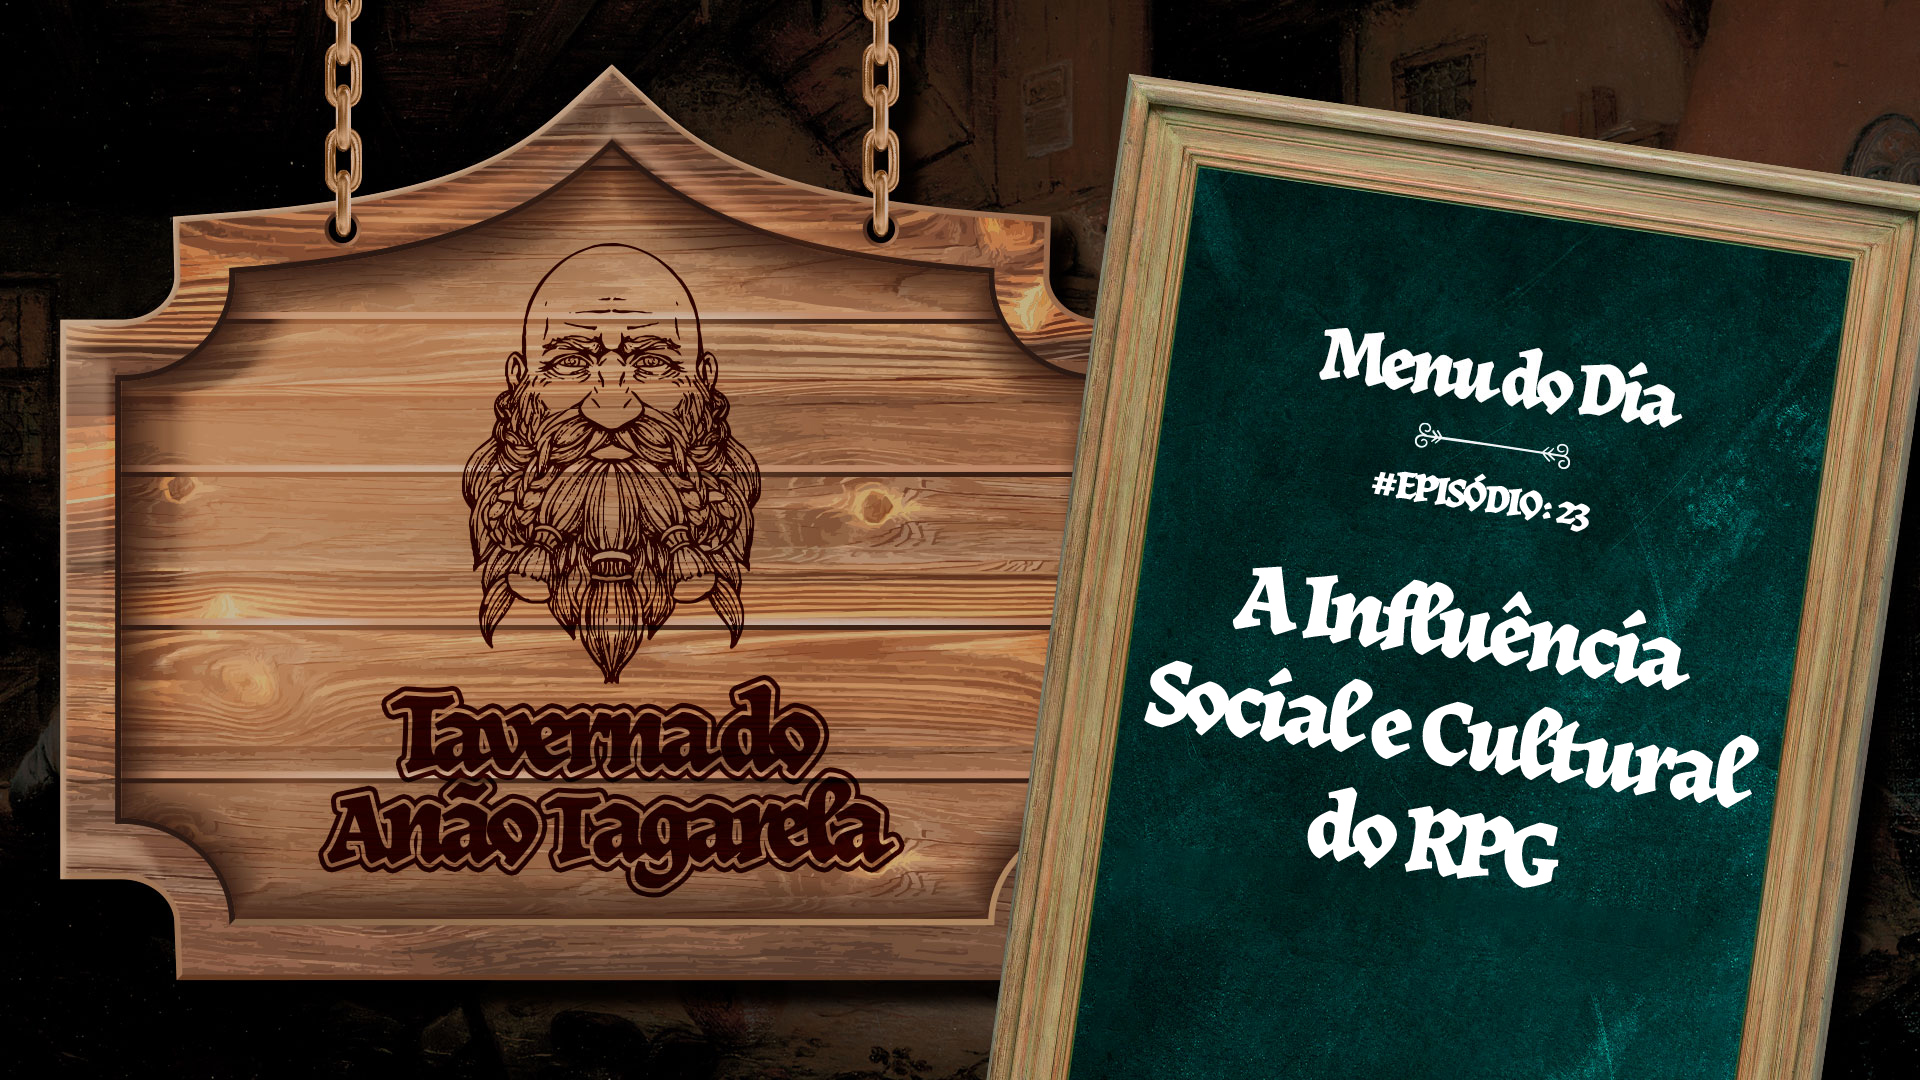 A Influência Social e Cultural do RPG - Taverna do Anão Tagarela #23